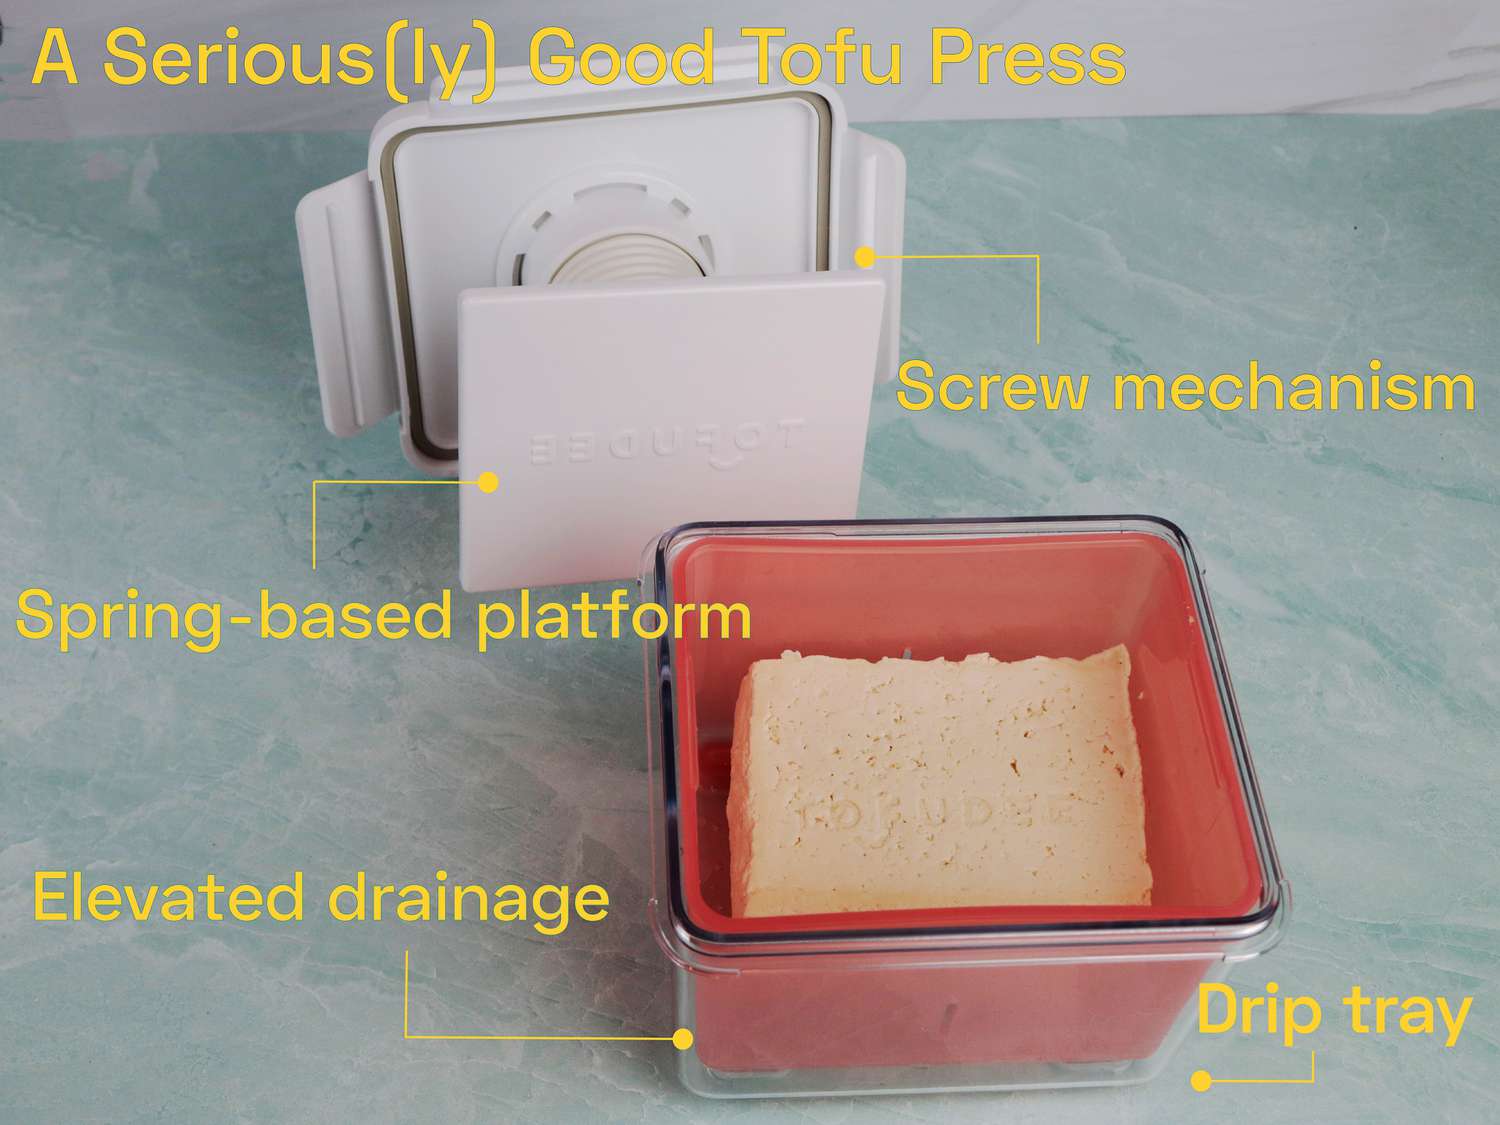 这张图展示了豆腐压榨机所有最好的方面